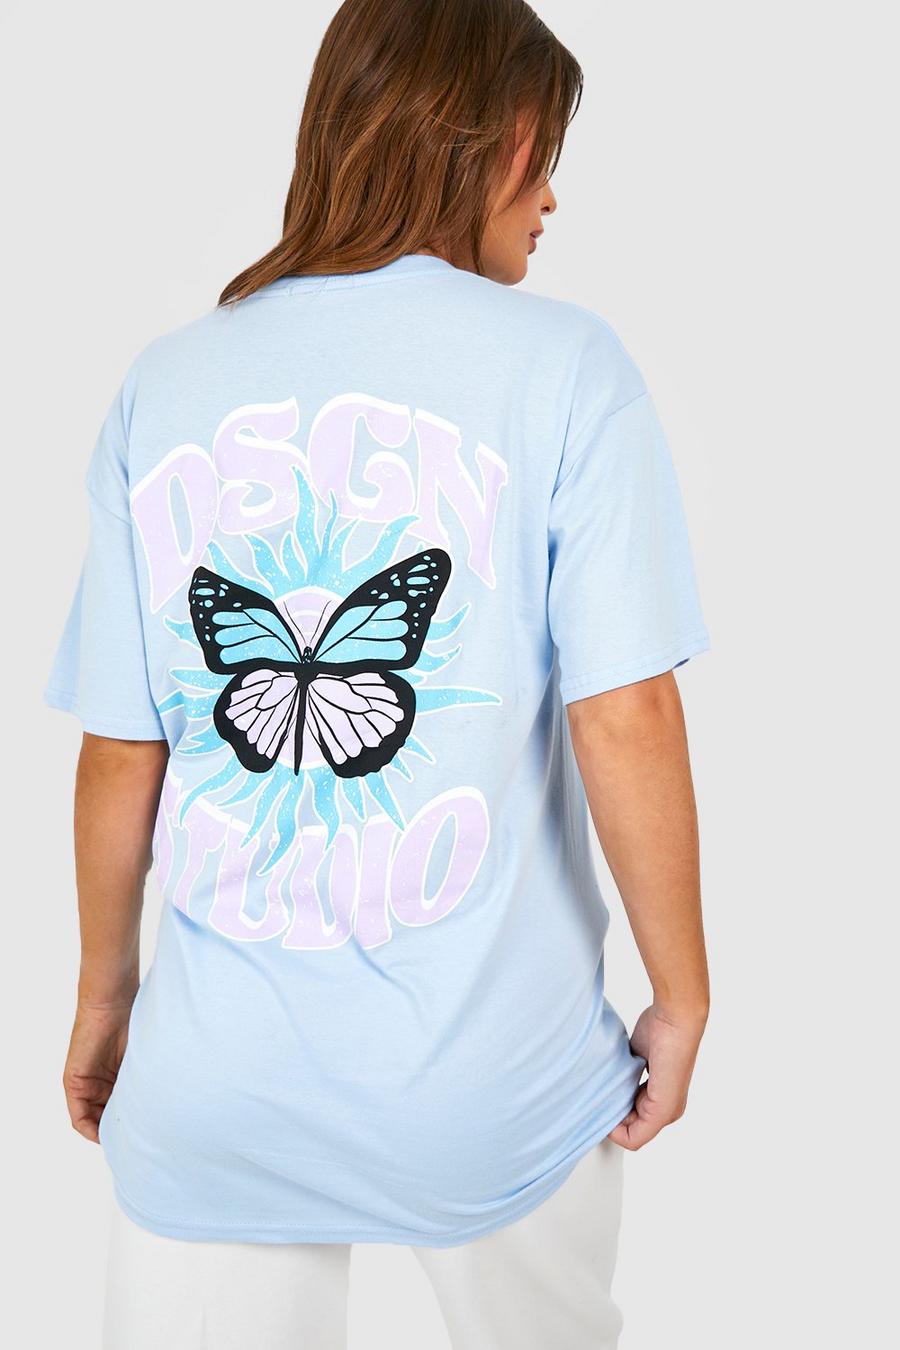 T-shirt Premaman Dsgn Studio con farfalle celesti, Light blue azzurro